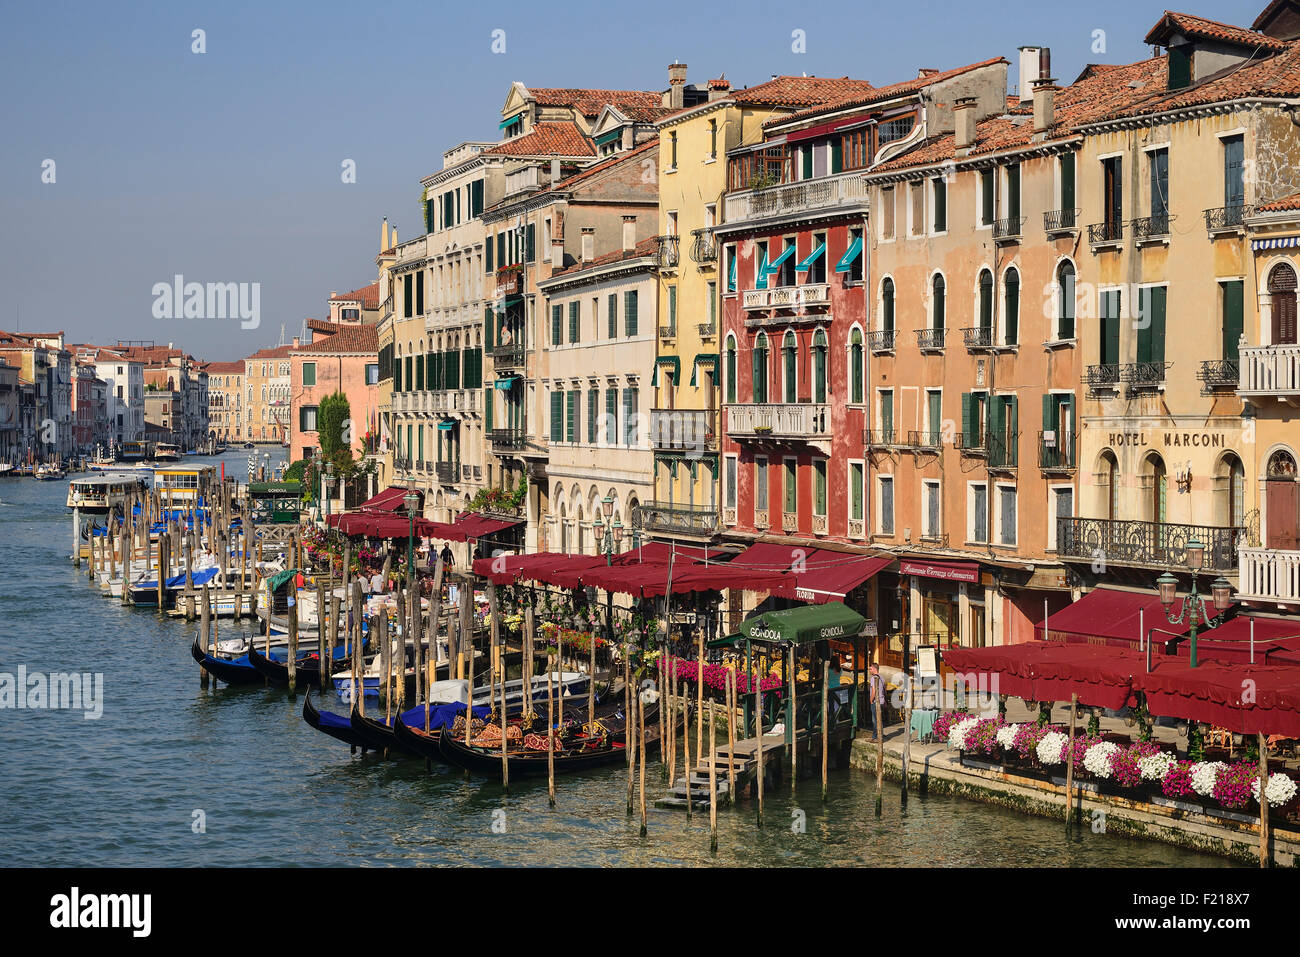 Italia, Venecia, Gran Canal visto desde el Puente de Rialto. Foto de stock